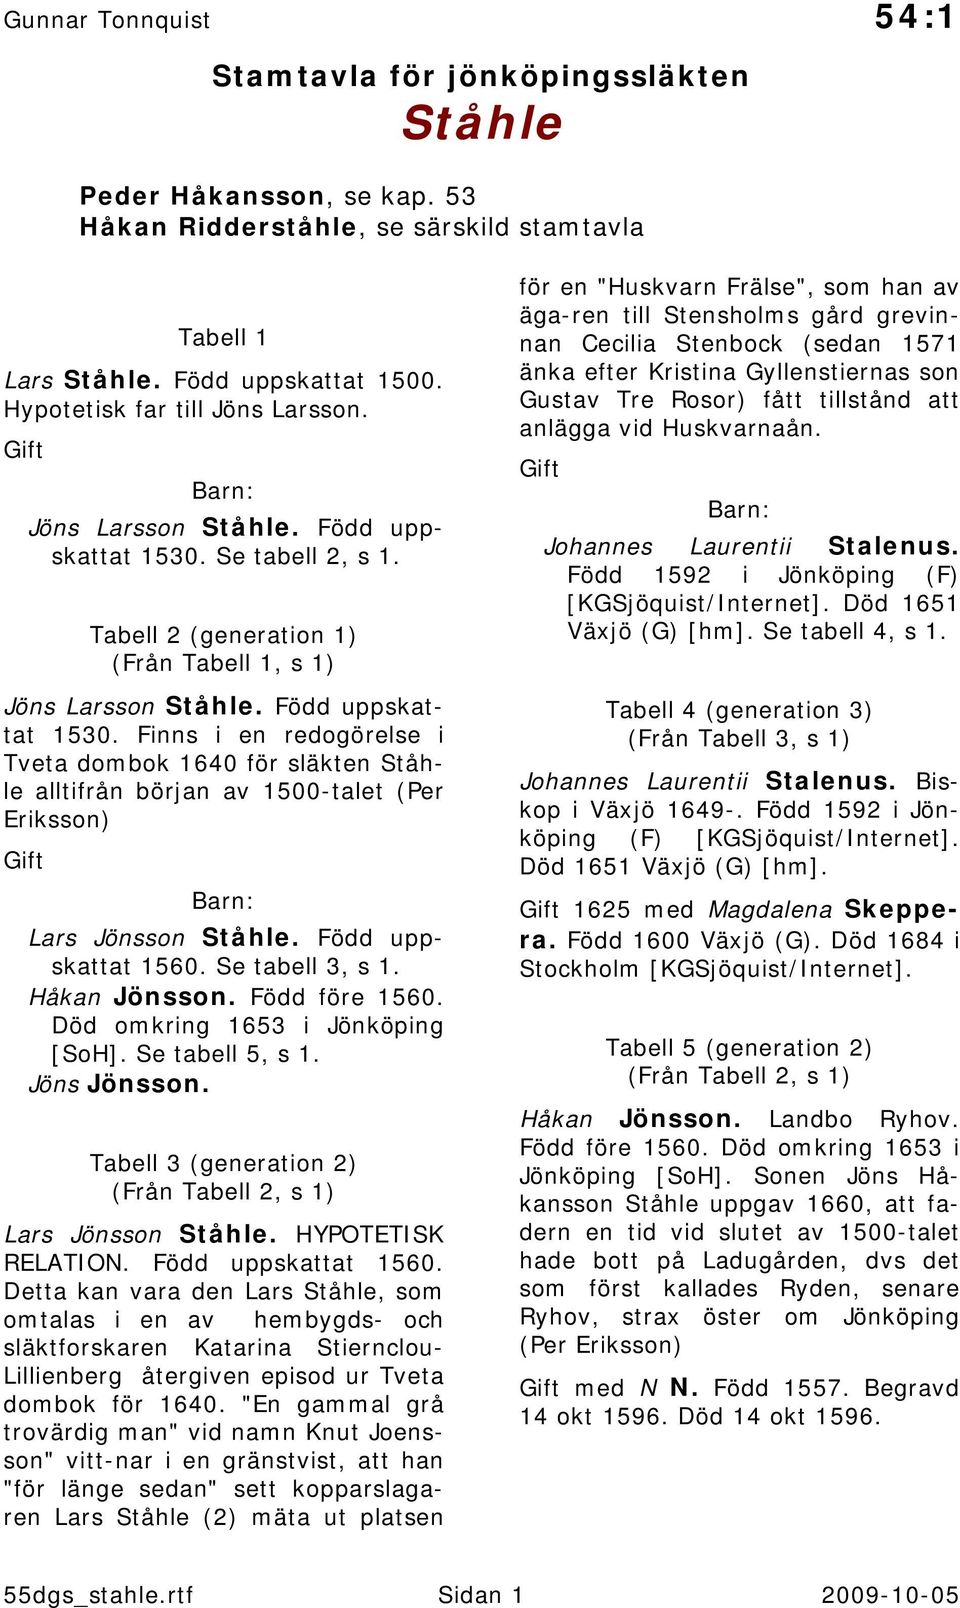 Född uppskattat 1560. Se tabell 3, s 1. Håkan Jönsson. Född före 1560. Död omkring 1653 i Jönköping [SoH]. Se tabell 5, s 1. Jöns Jönsson.